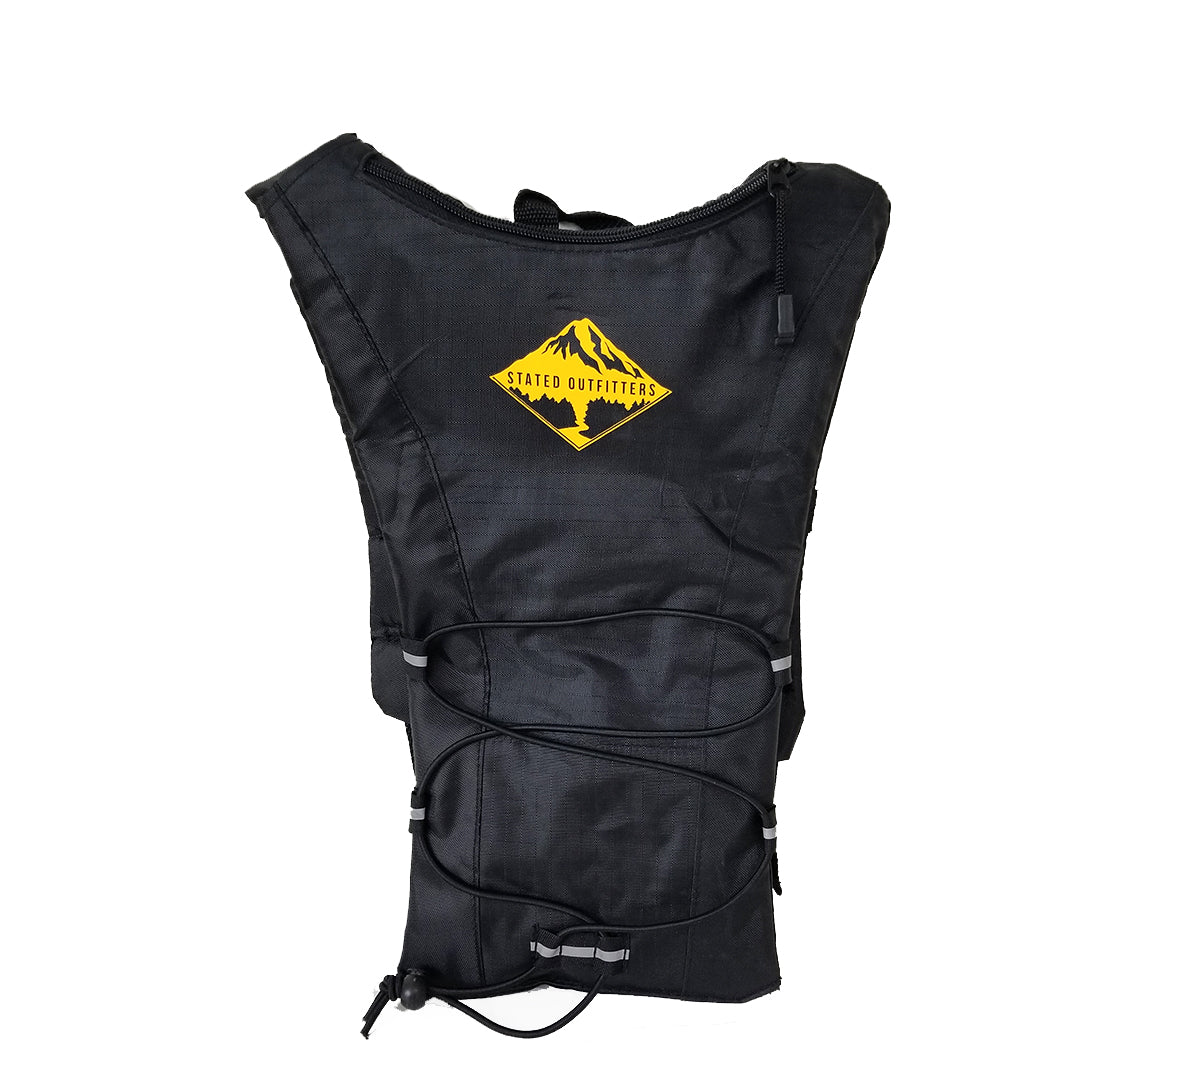 Hydro Backpack